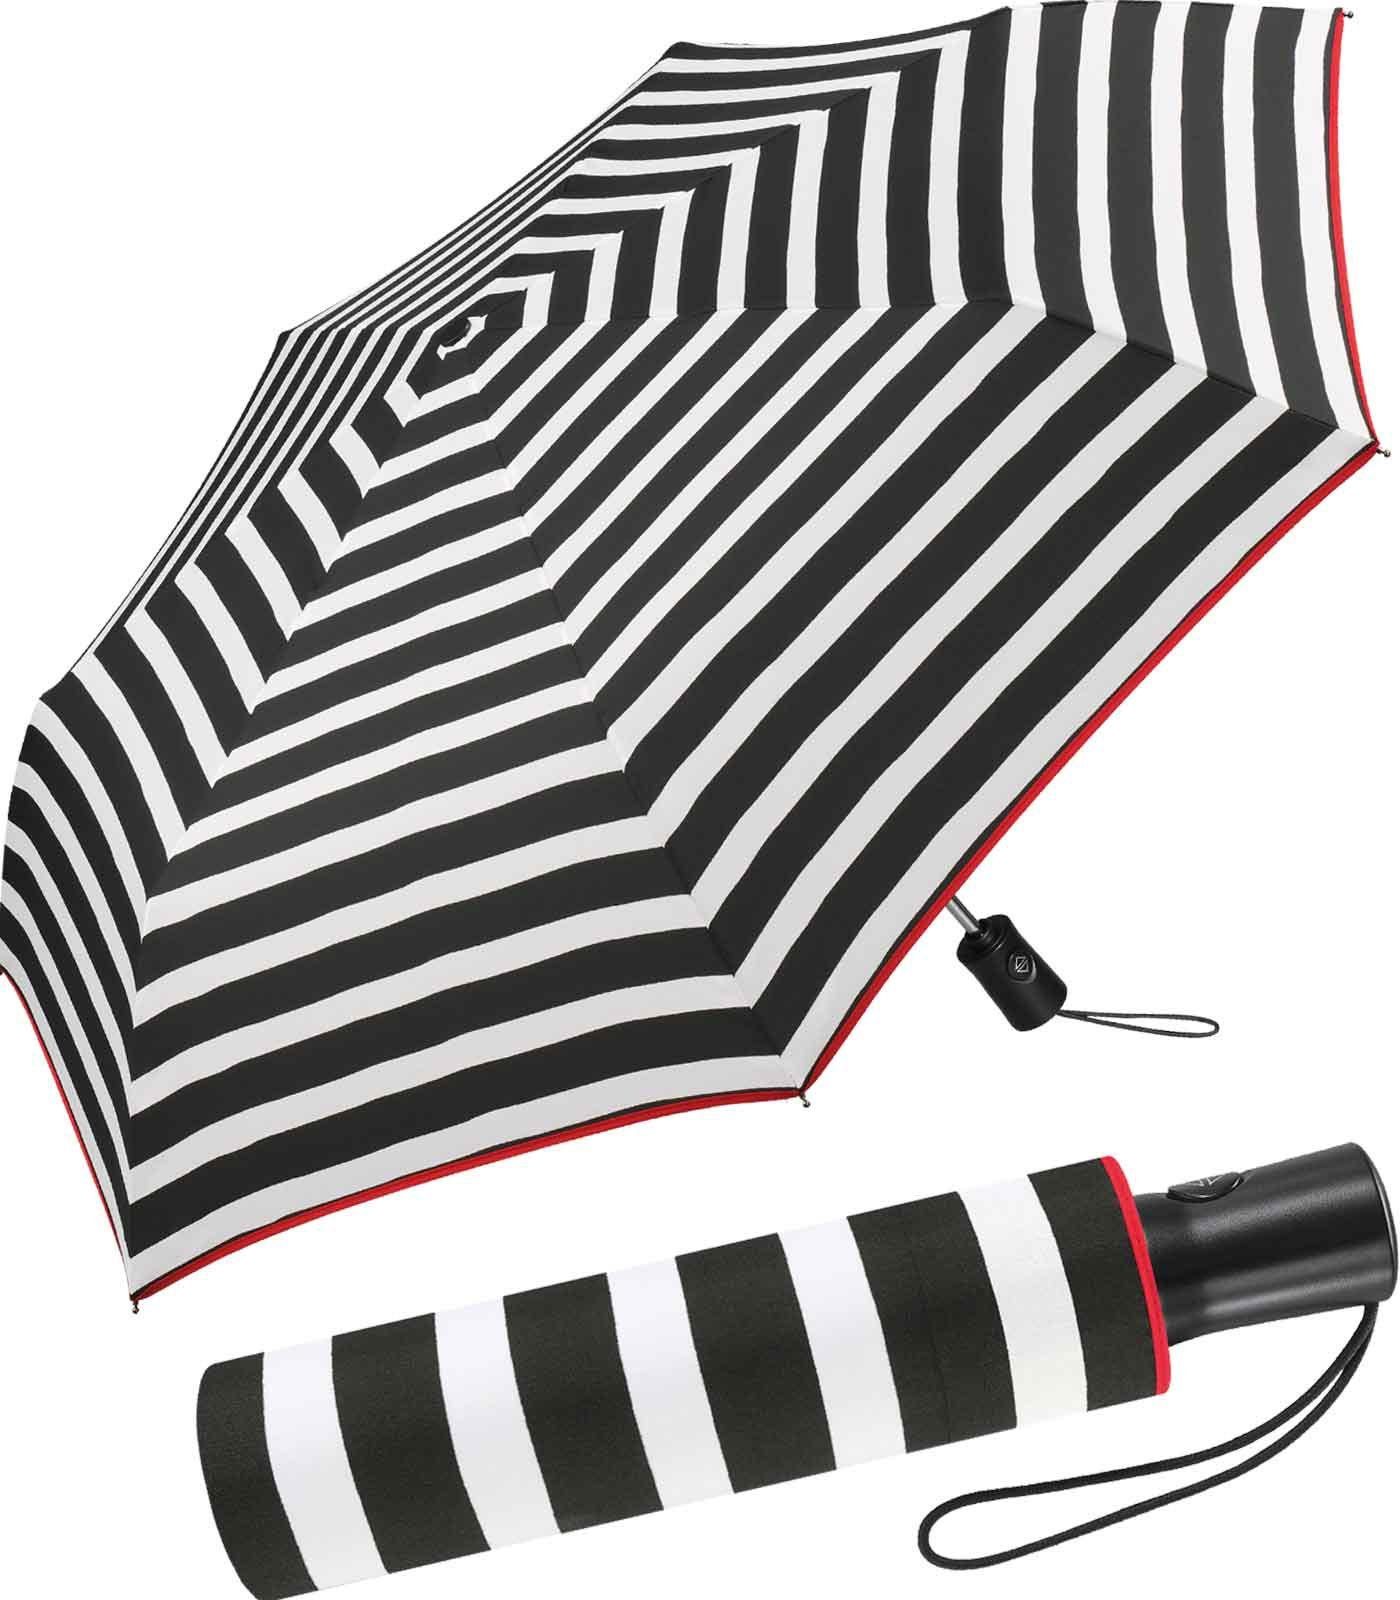 HAPPY RAIN Langregenschirm schöner Damen-Regenschirm mit Auf-Zu-Automatik, bedruckt mit klassischen weißen Streifen